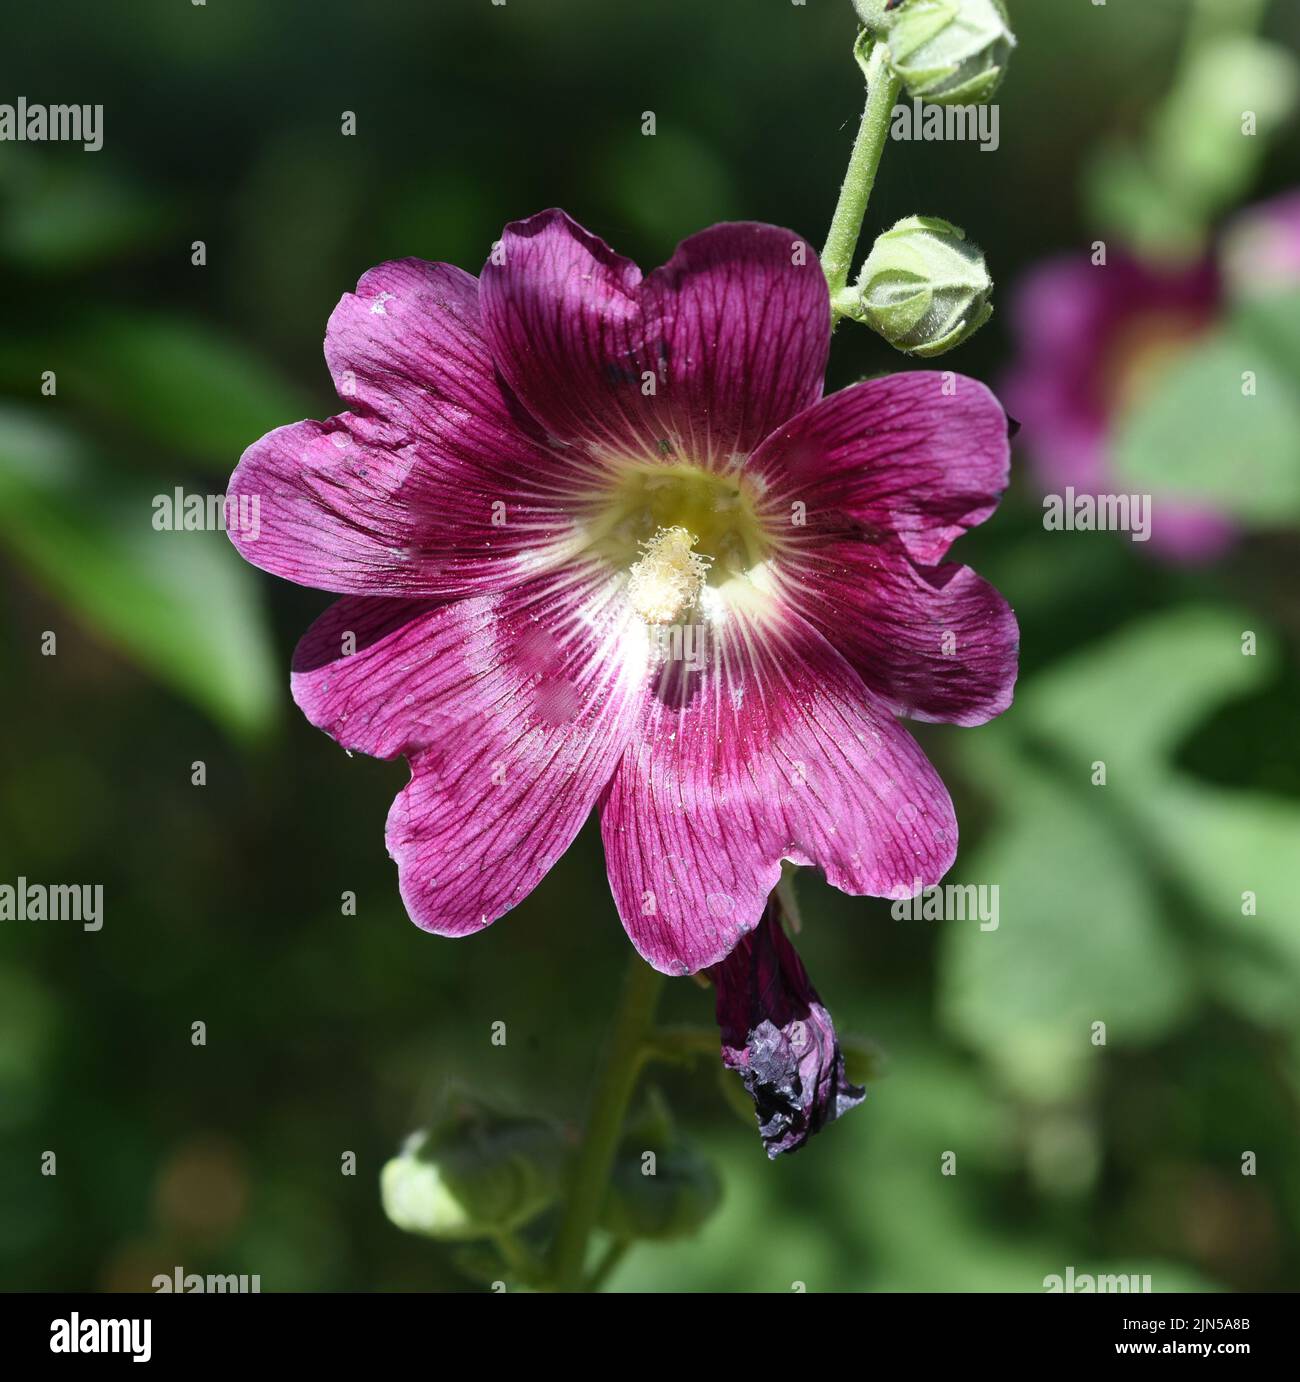 Stockrose, Alcea rosea, auch unter den Namen Stockmalve oder Bauernrose bekannt ist eine schoene Gartenblume und eine Heilpflanze. Hollyhock, Alcea ro Foto Stock